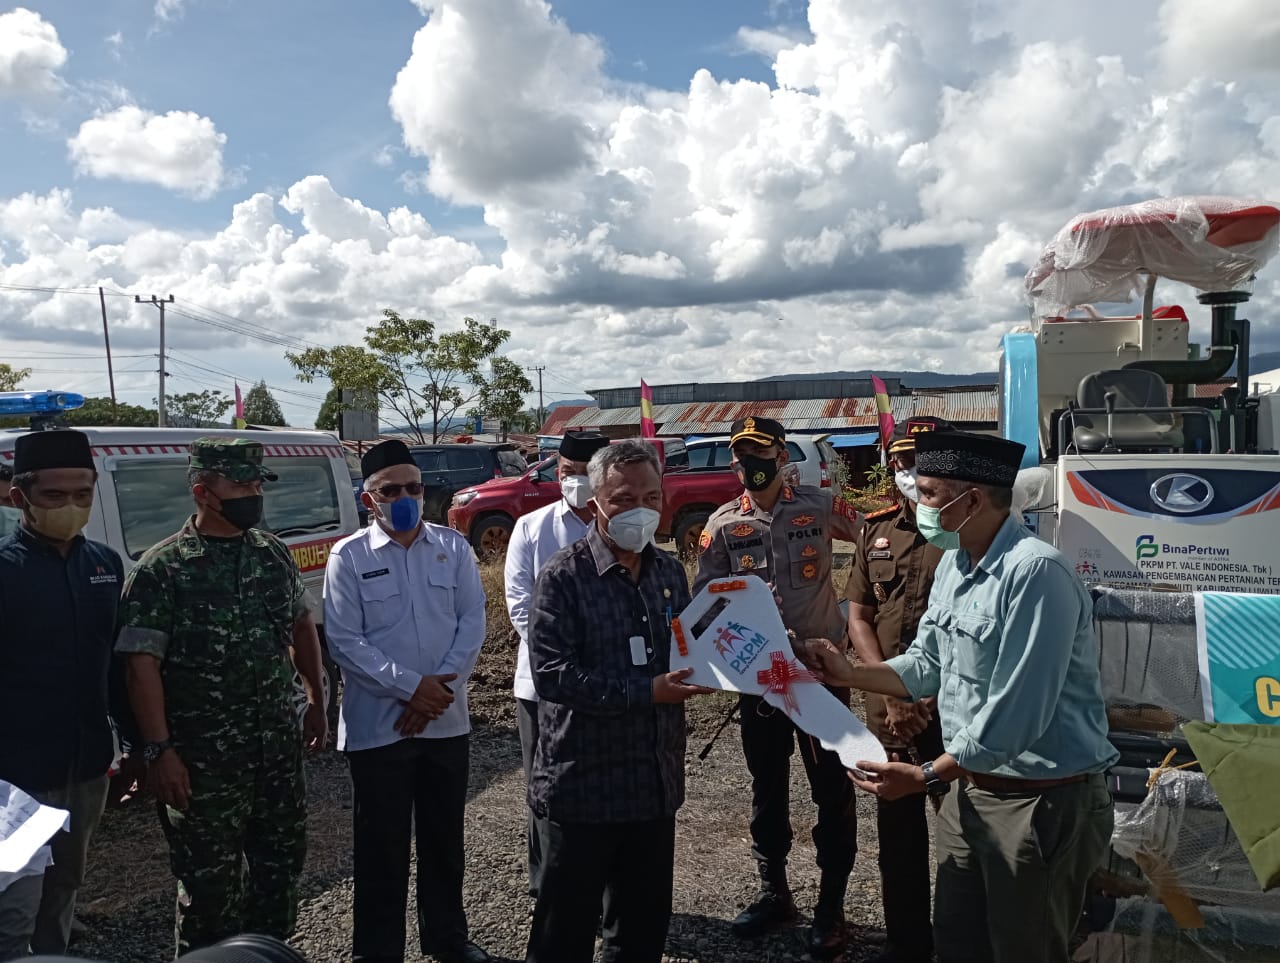 Bupati Lutim Berterimakasih ke PT Vale Indonesia Atas Penyerahan Alat Mesin Combine